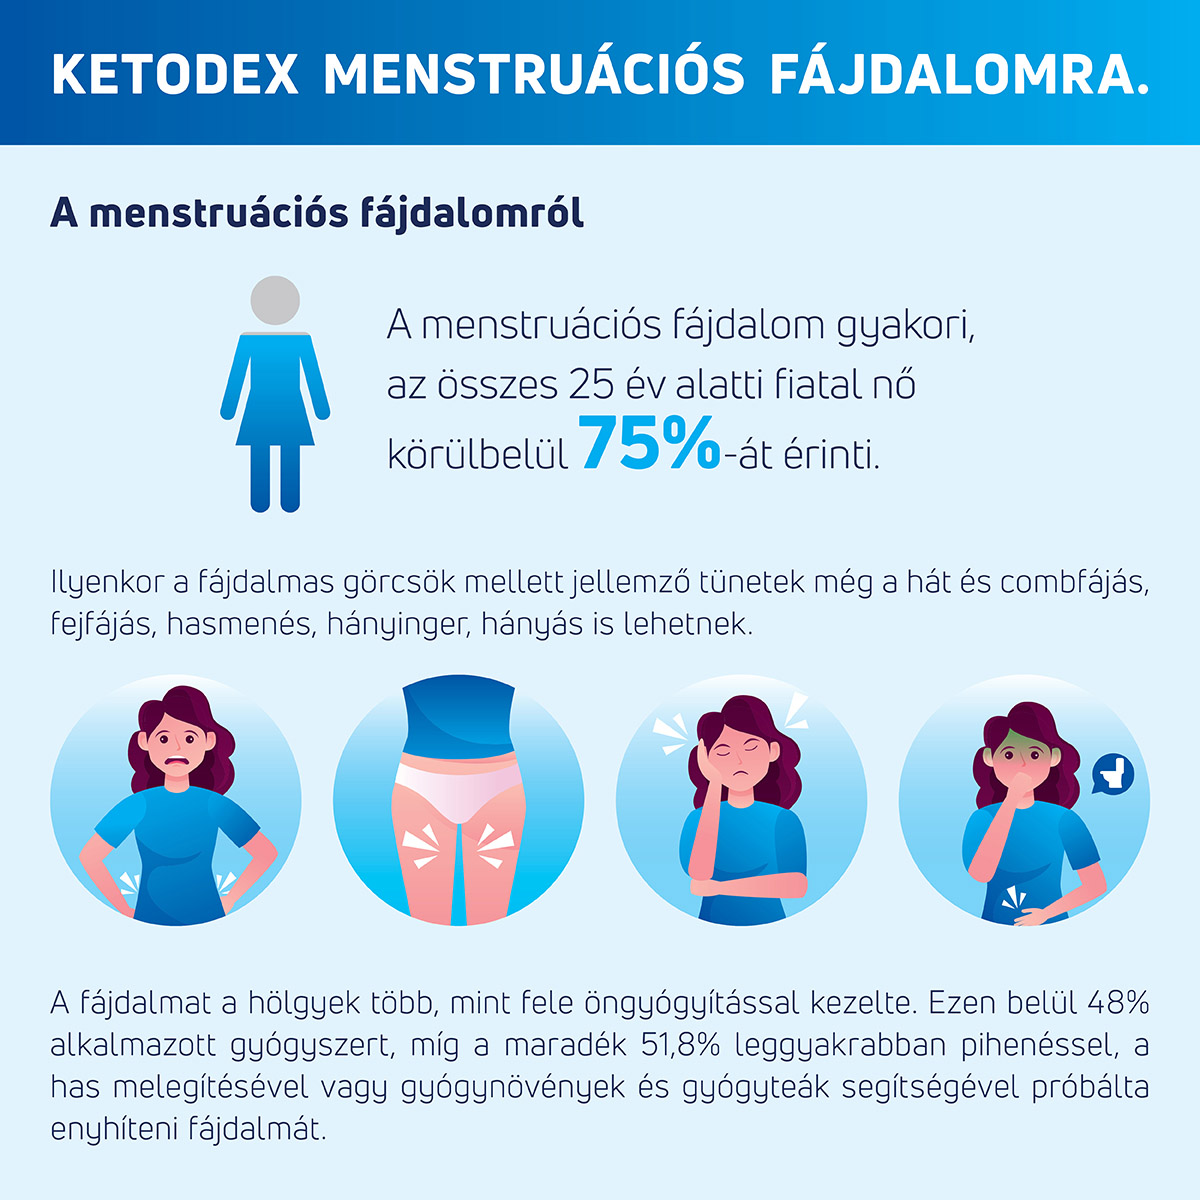 A menstruációs fájdalom gyakori, az összes 25 év alatti fiatal nő körülbelül 75%-át érinti. Ilyenkor a fájdalmas görcsök mellett jellemző tünetek még a hát és combfájás, fejfájás, hasmenés, hányinger, hányás is lehetnek. A fájdalmat a hölgyek több, mint fele öngyógyítással kezelte. Ezen belül 48% alkalmazott gyógyszert, míg a maradék 51,8% leggyakrabban pihenéssel, a has melegítésével vagy gyógynövények és gyógyteák segítségével próbálta enyhíteni fájdalmát